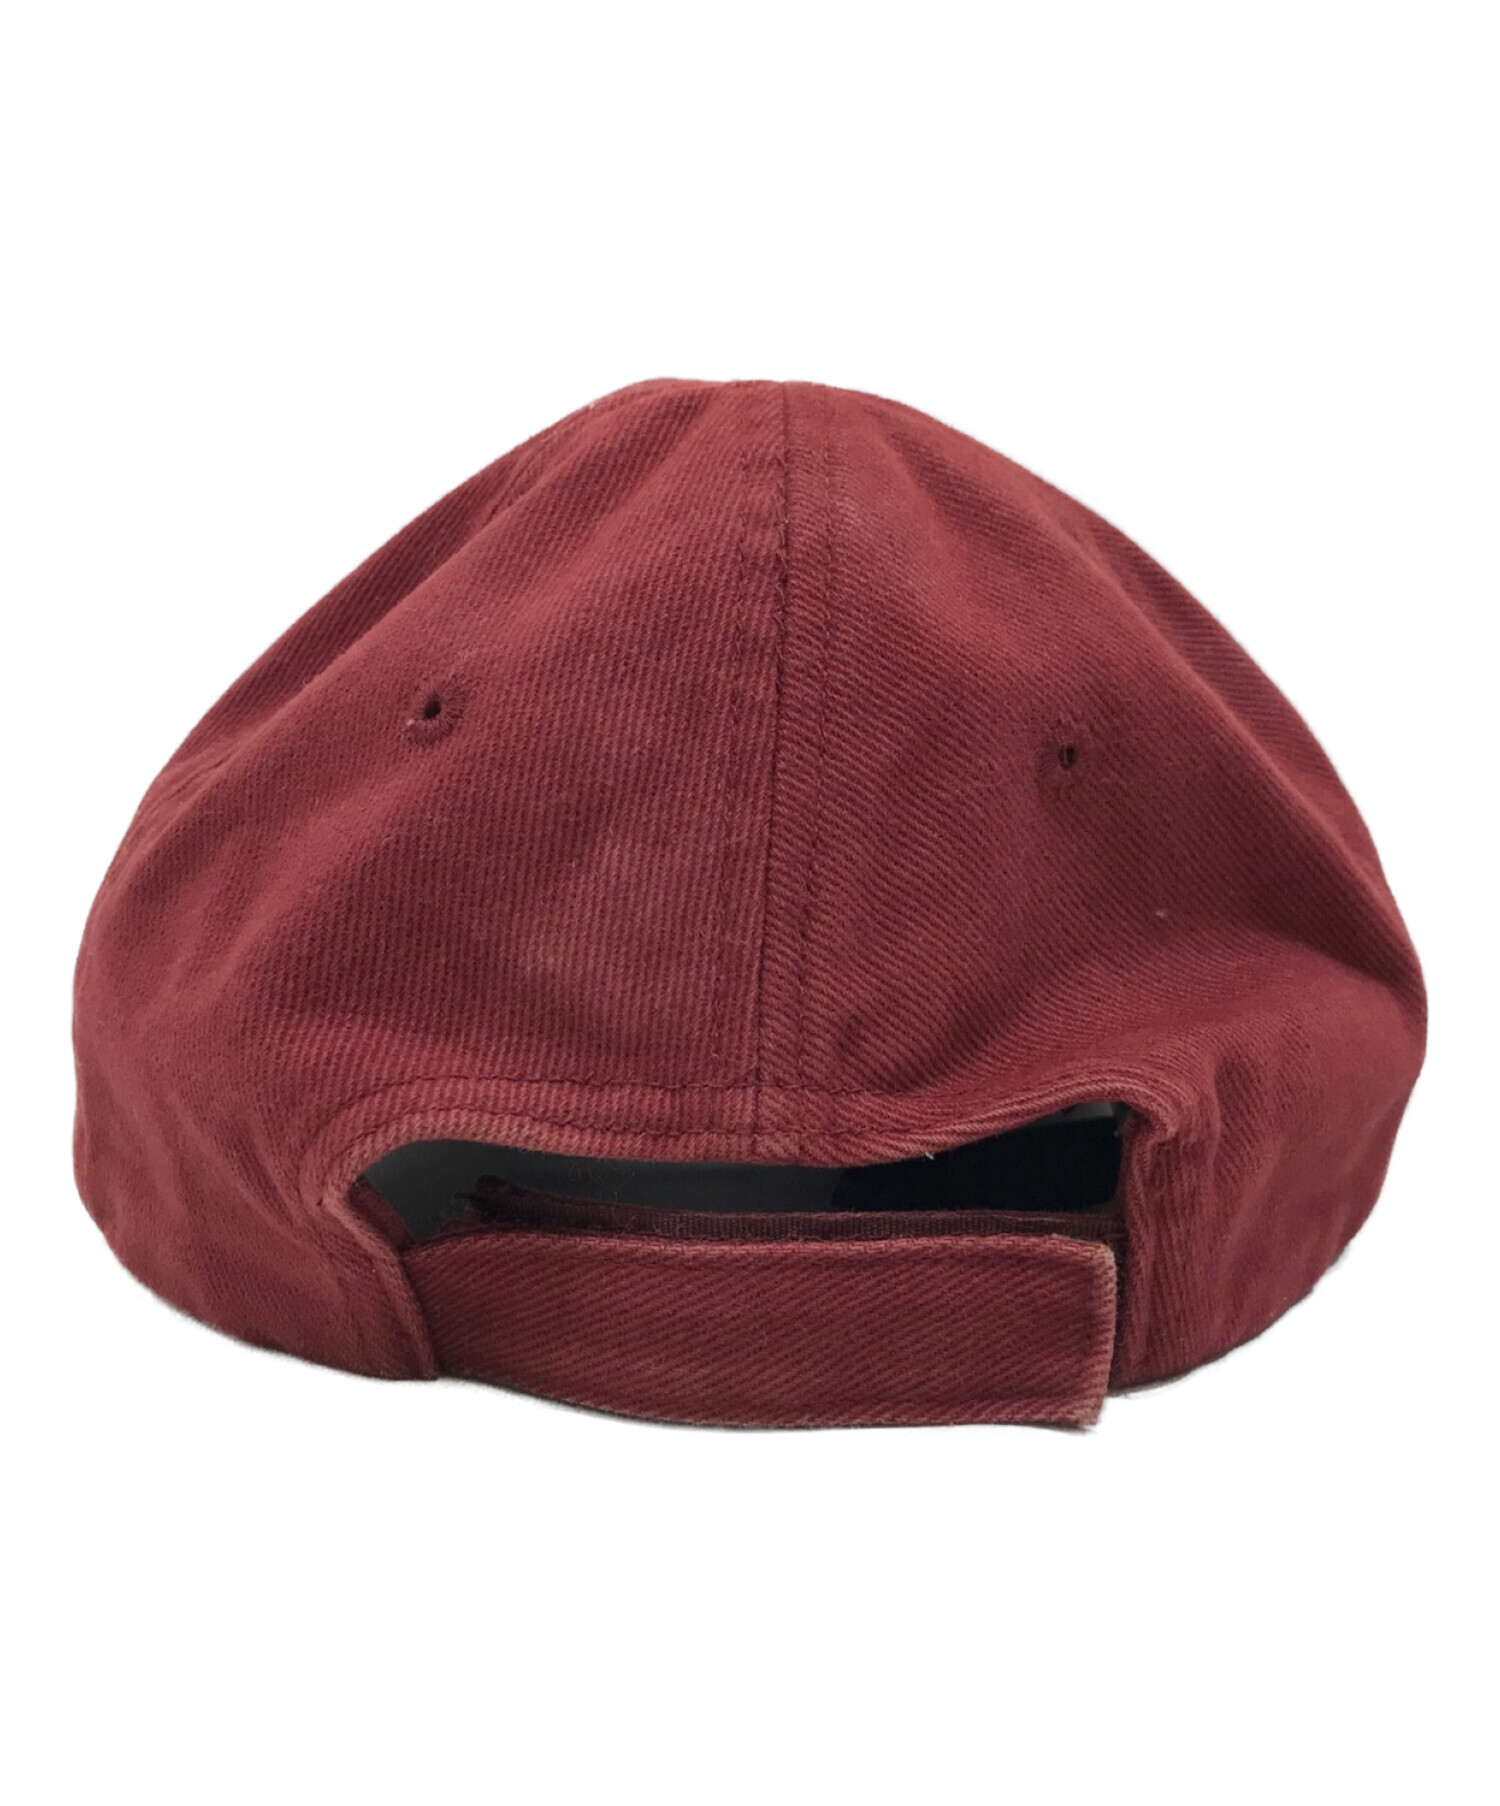 14,700円23ssバレンシアガBALENCIAGA帽子 ハンチング  ベレー帽